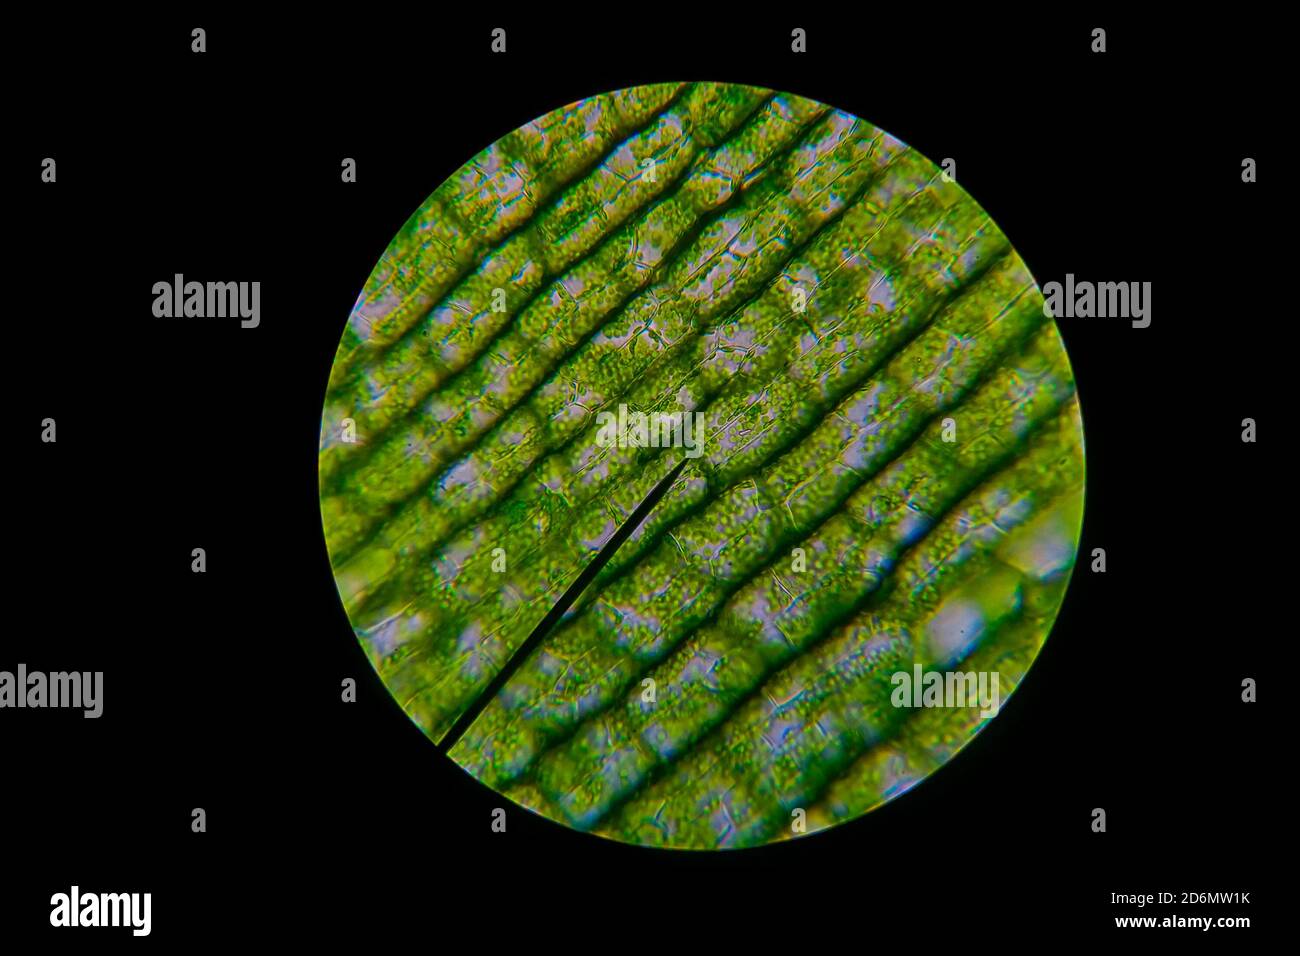 Les grains de feuilles vertes aussi connus sous le nom de chloroplastes dans les cellules d'une adventice que l'on voit au microscope. Expérience de biologie. Banque D'Images